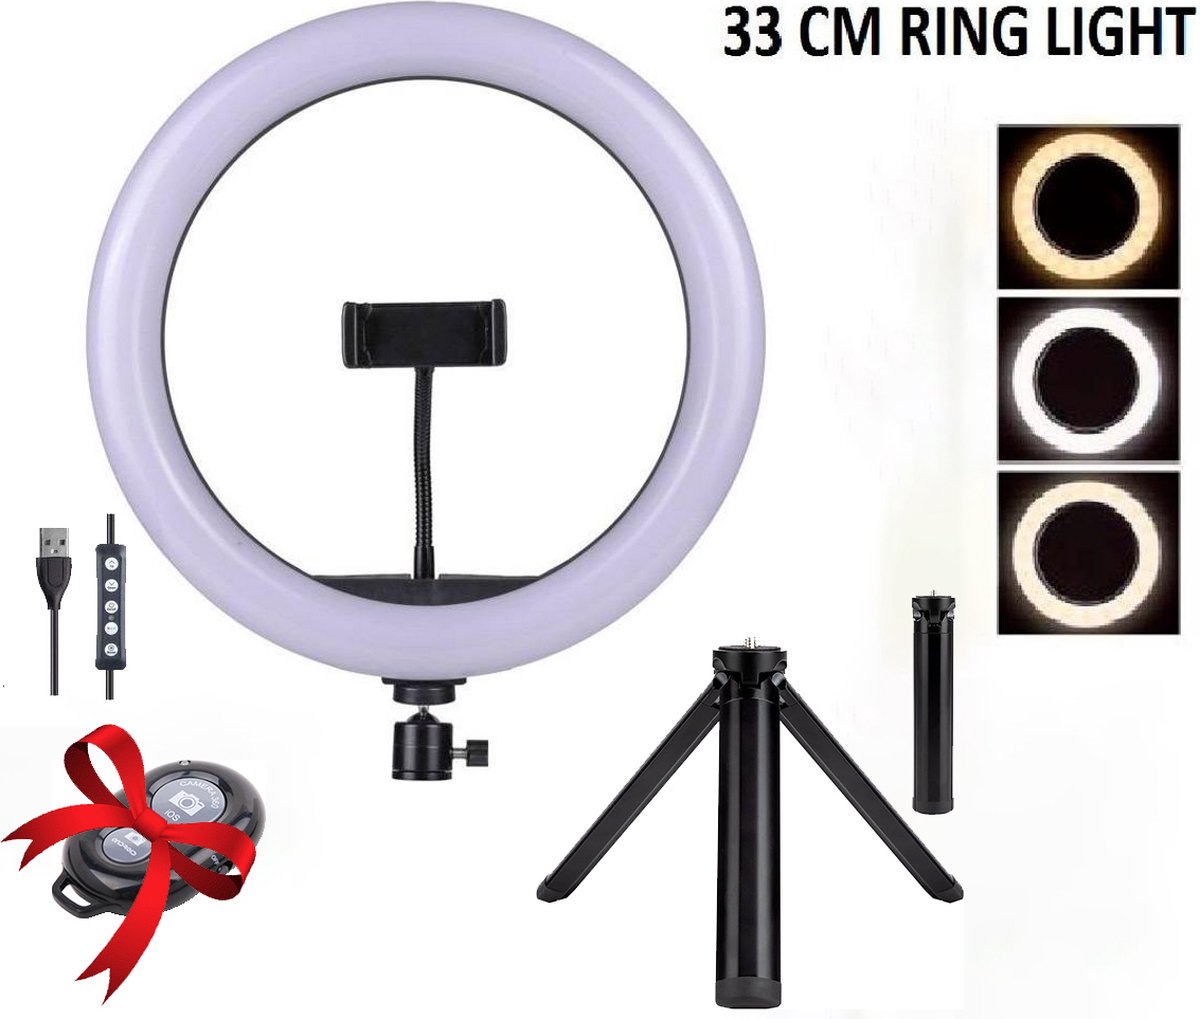 Anneau lumineux de Studio MJ3313 pouces RVB LED Ring Light, Lampe